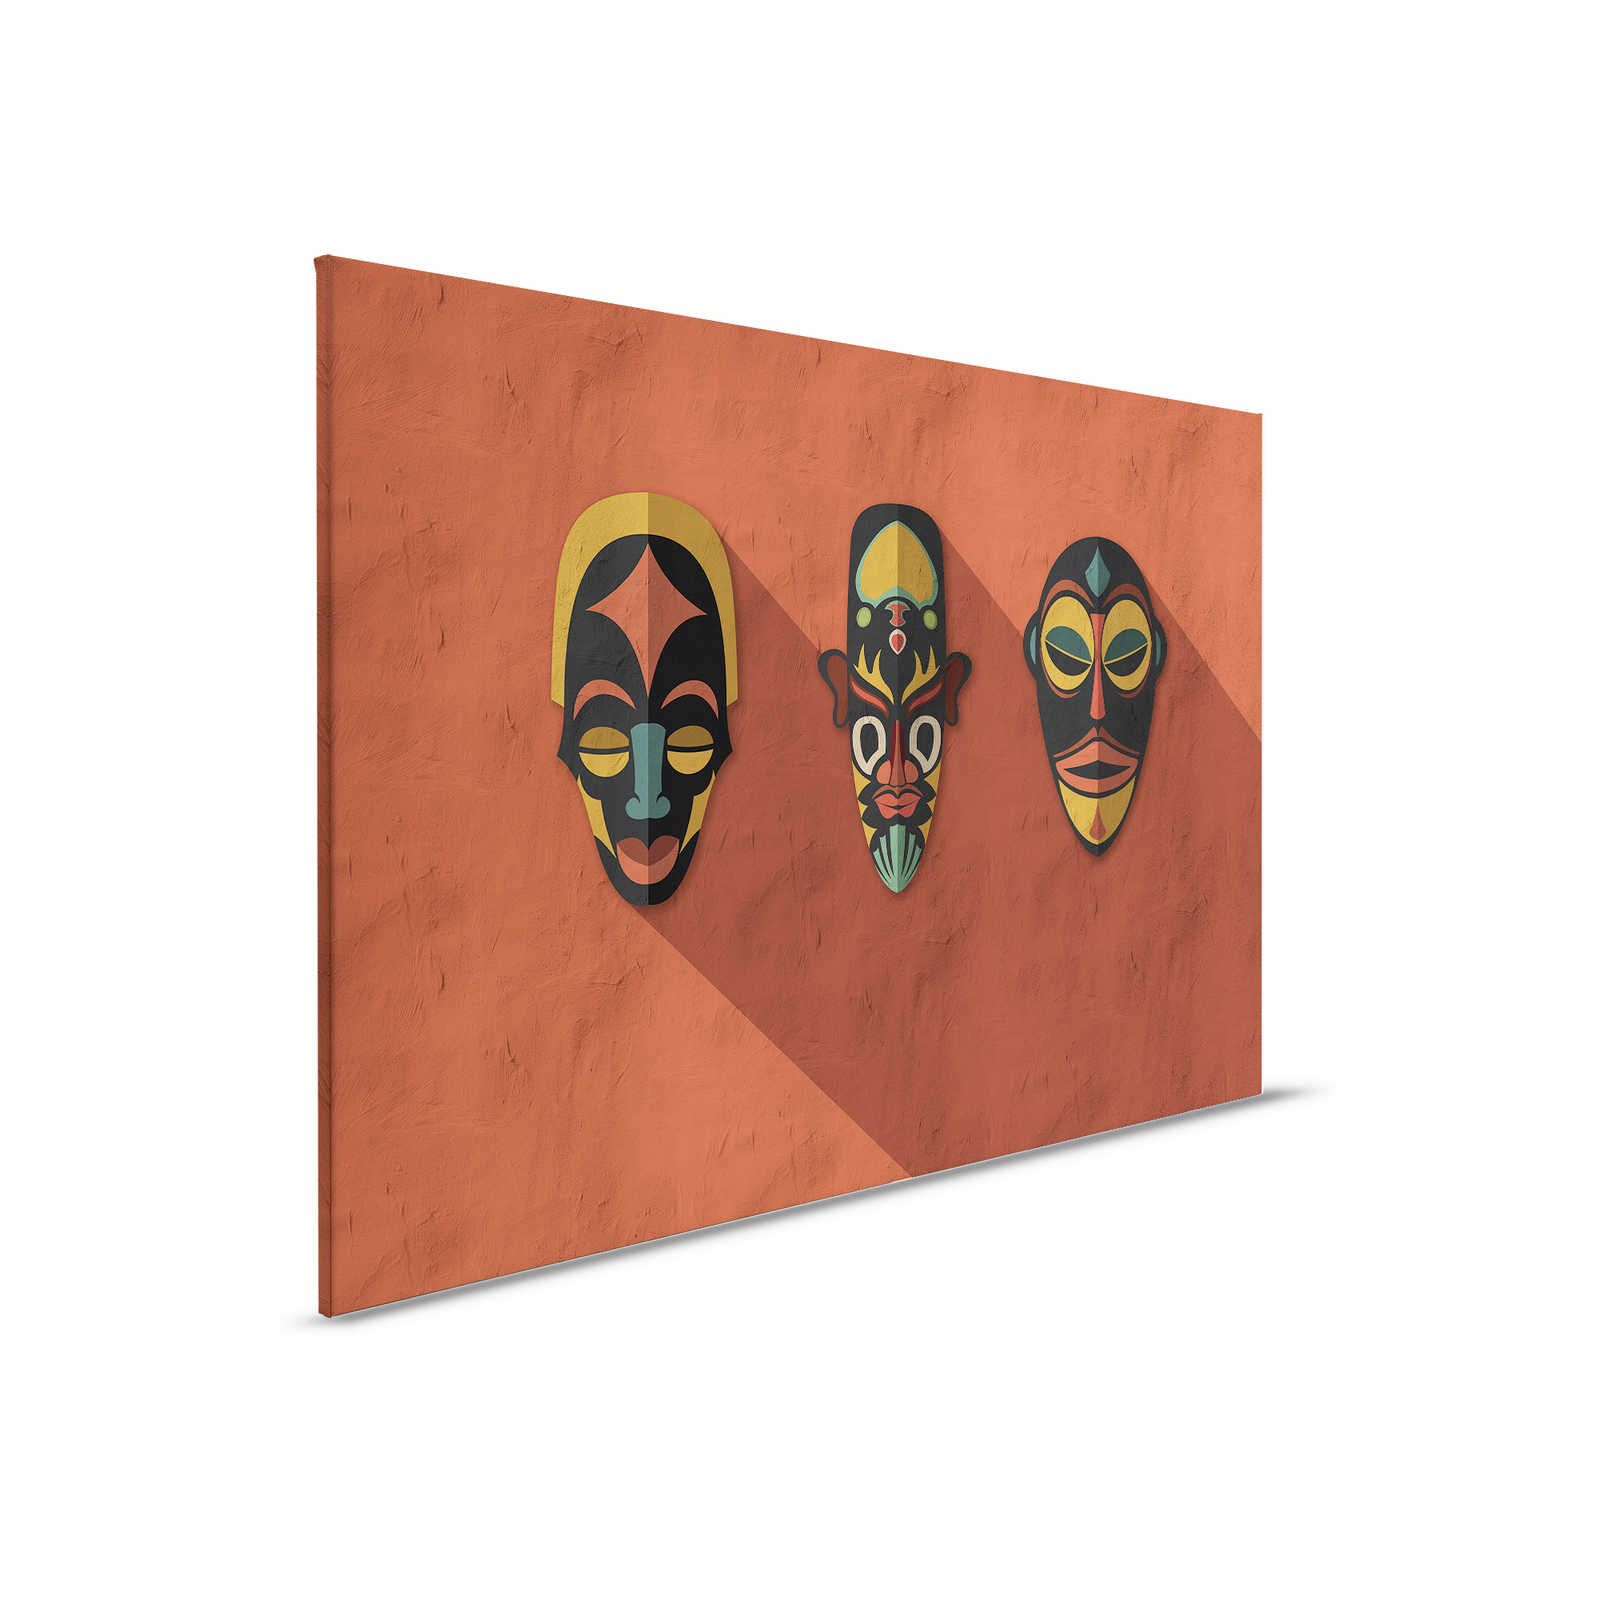         Zulu 2 - Leinwandbild Terrakotta Orange, Afrika Masken Zulu Design – 0,90 m x 0,60 m
    